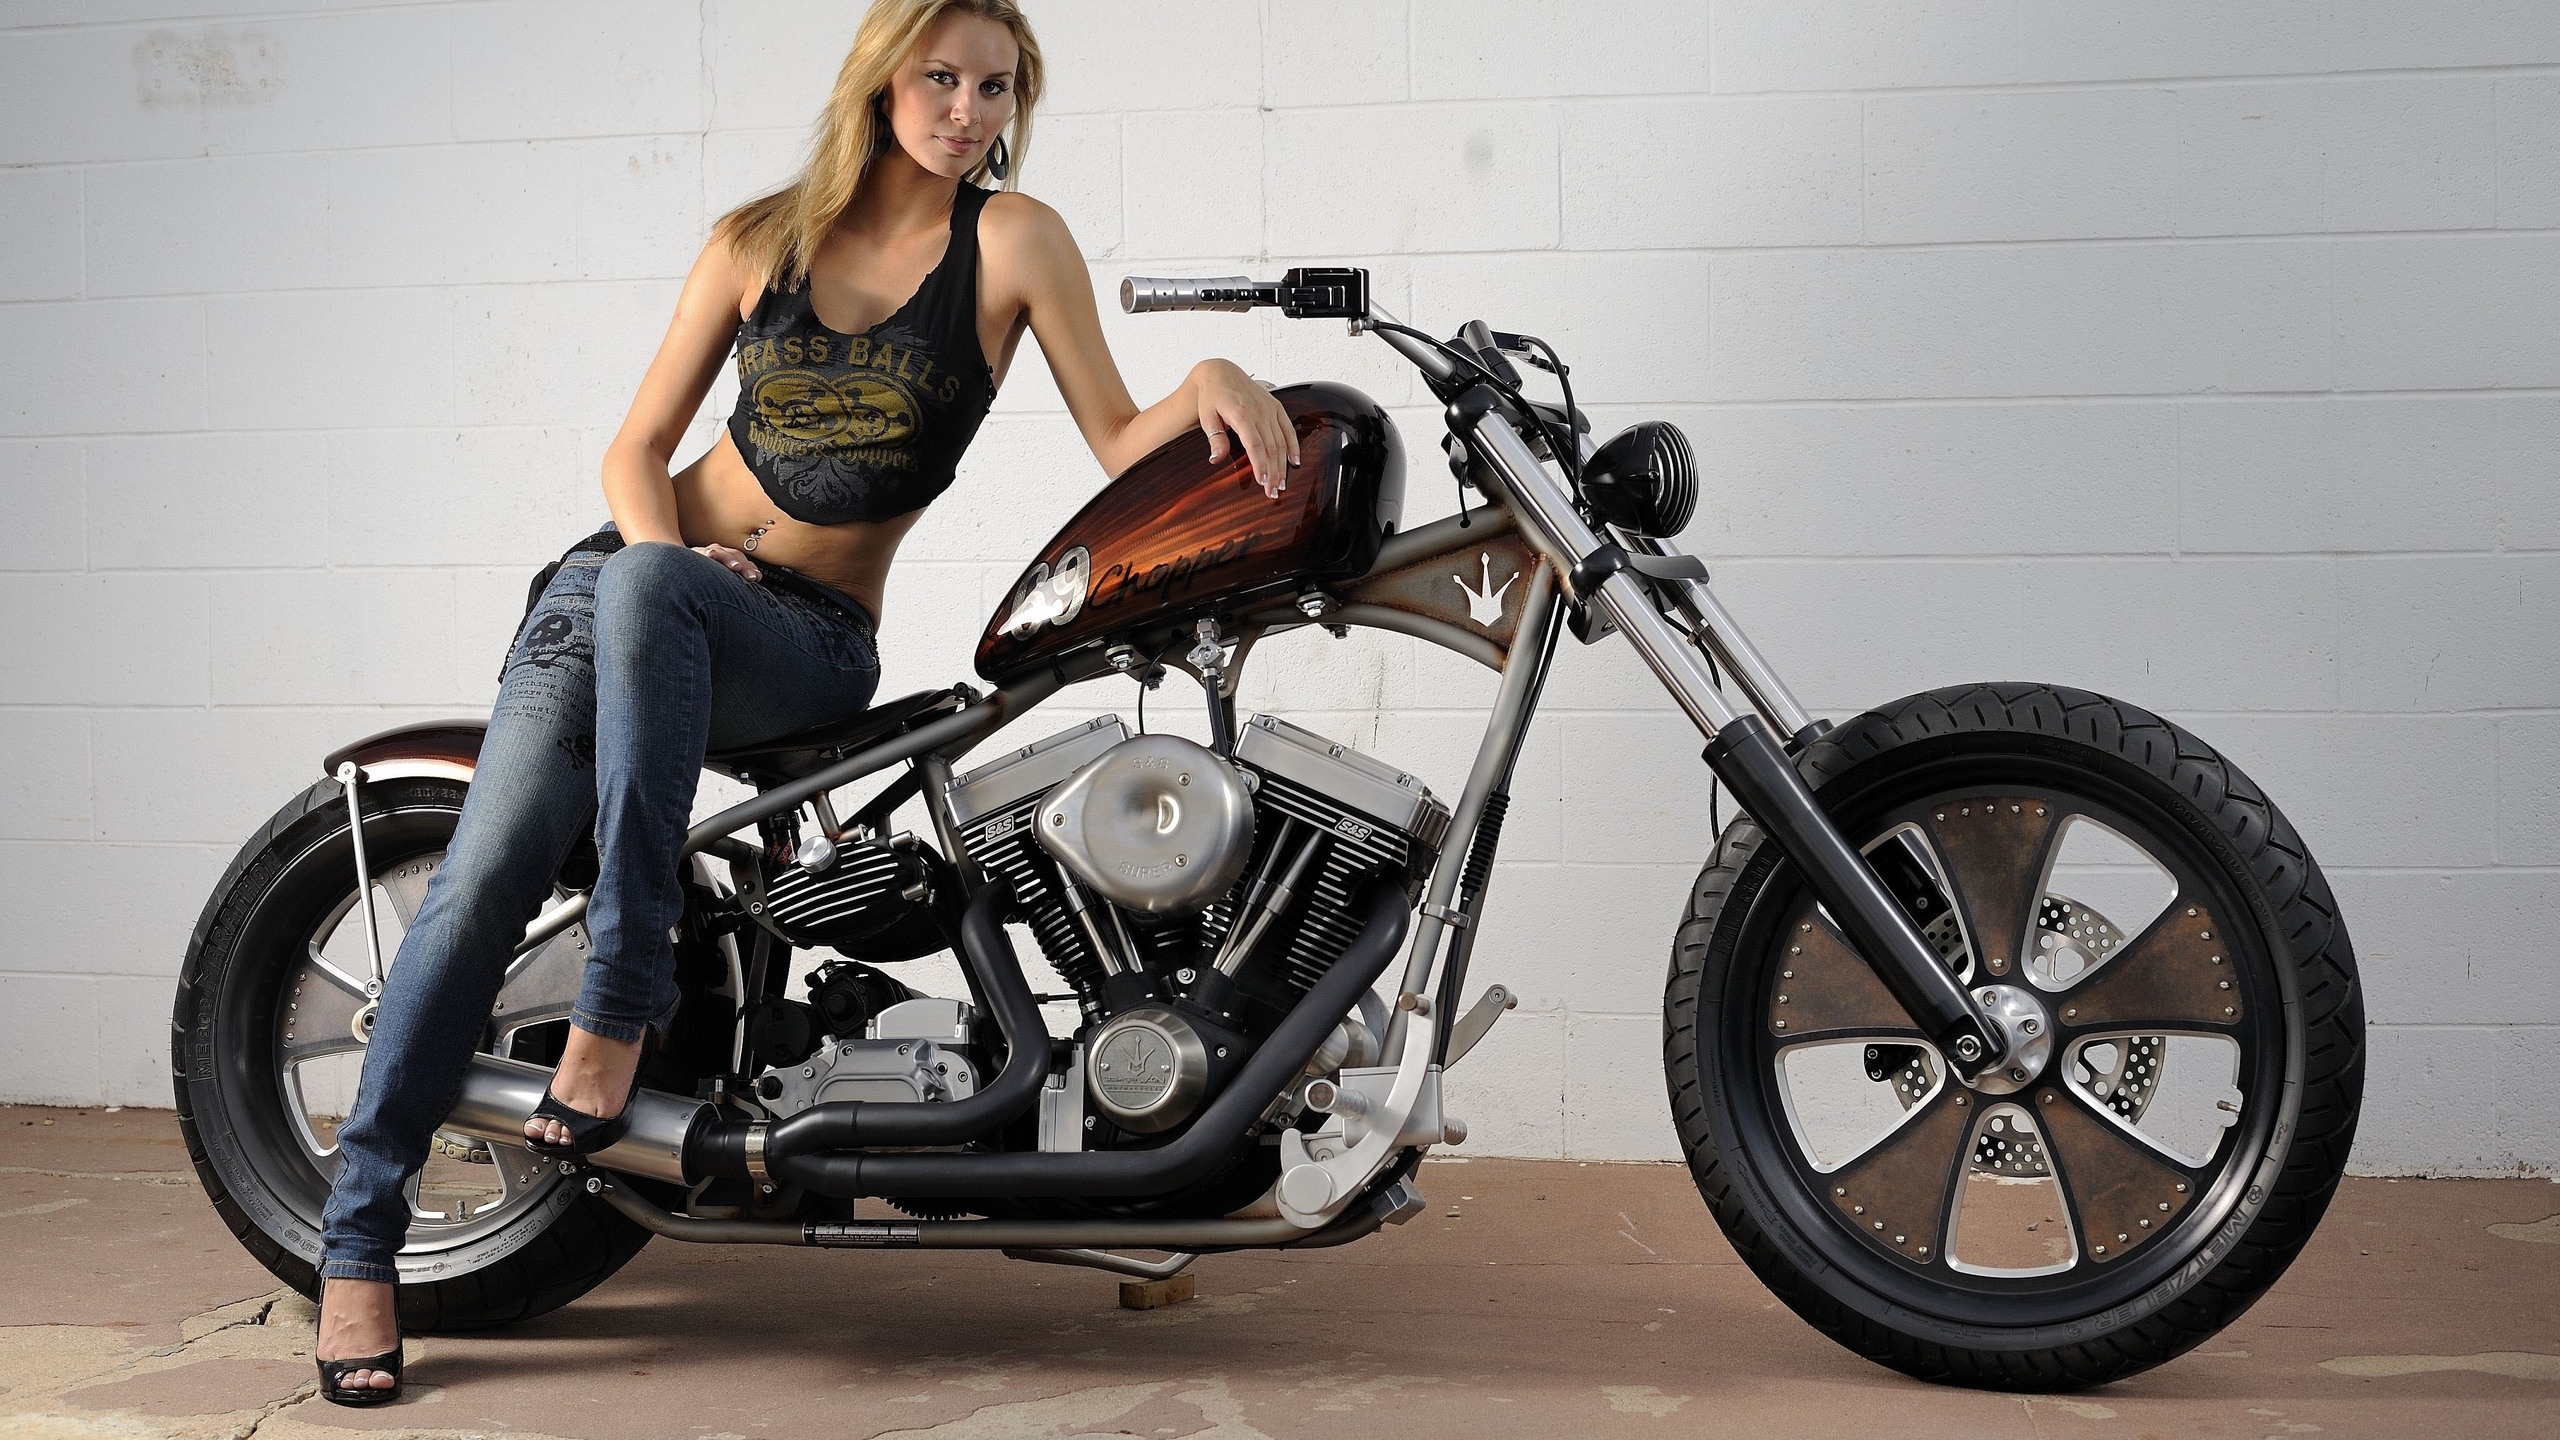 Harley Davidson Classic Bobber for 2560x1440 HDTV resolution